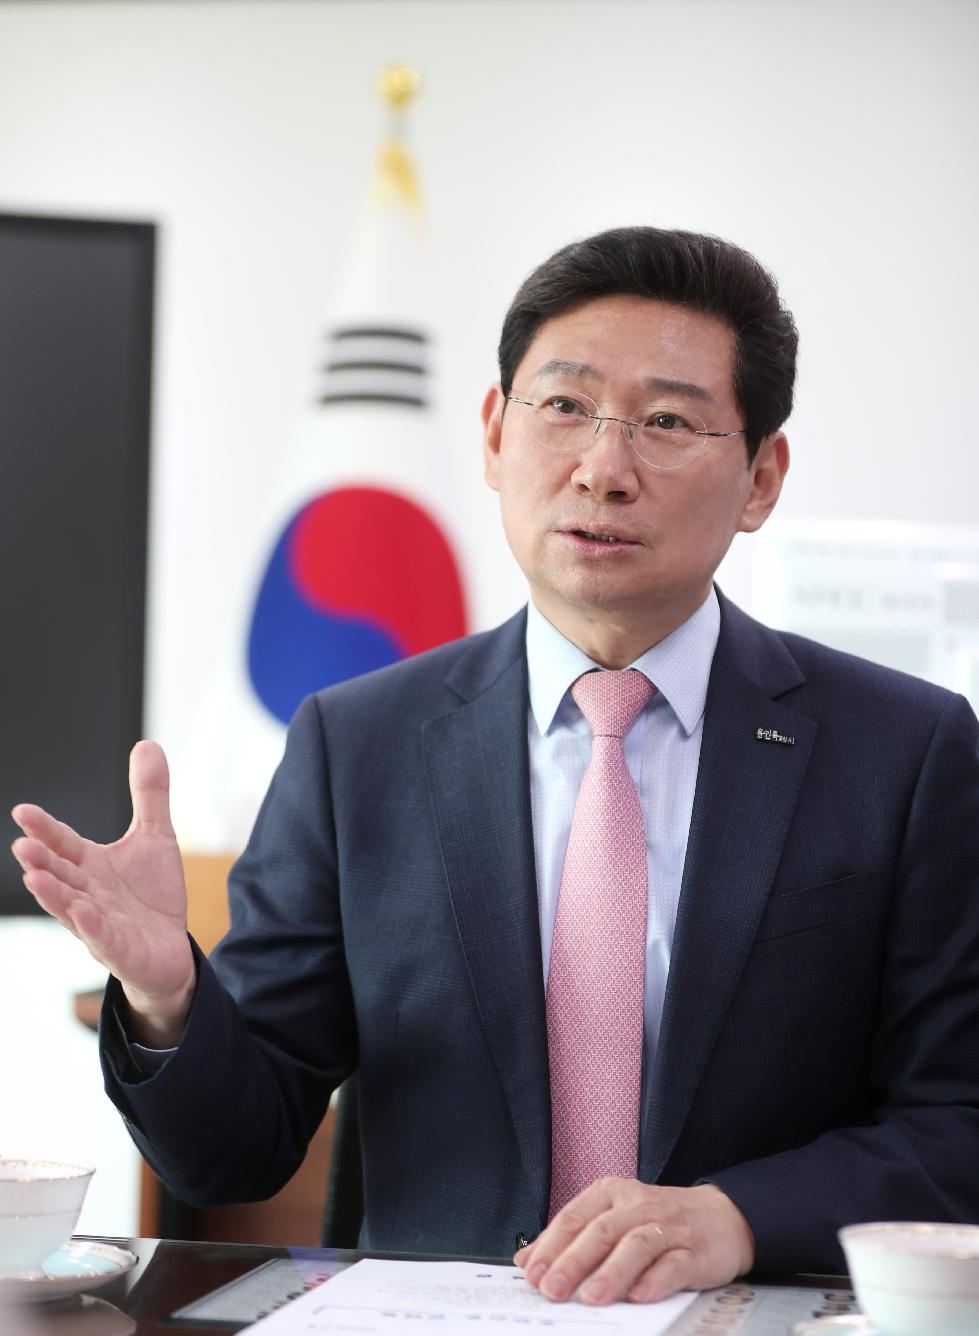 이상일 용인시장, 박상우 국토교통부 장관에 용인 발전을 위한 정부 지원 